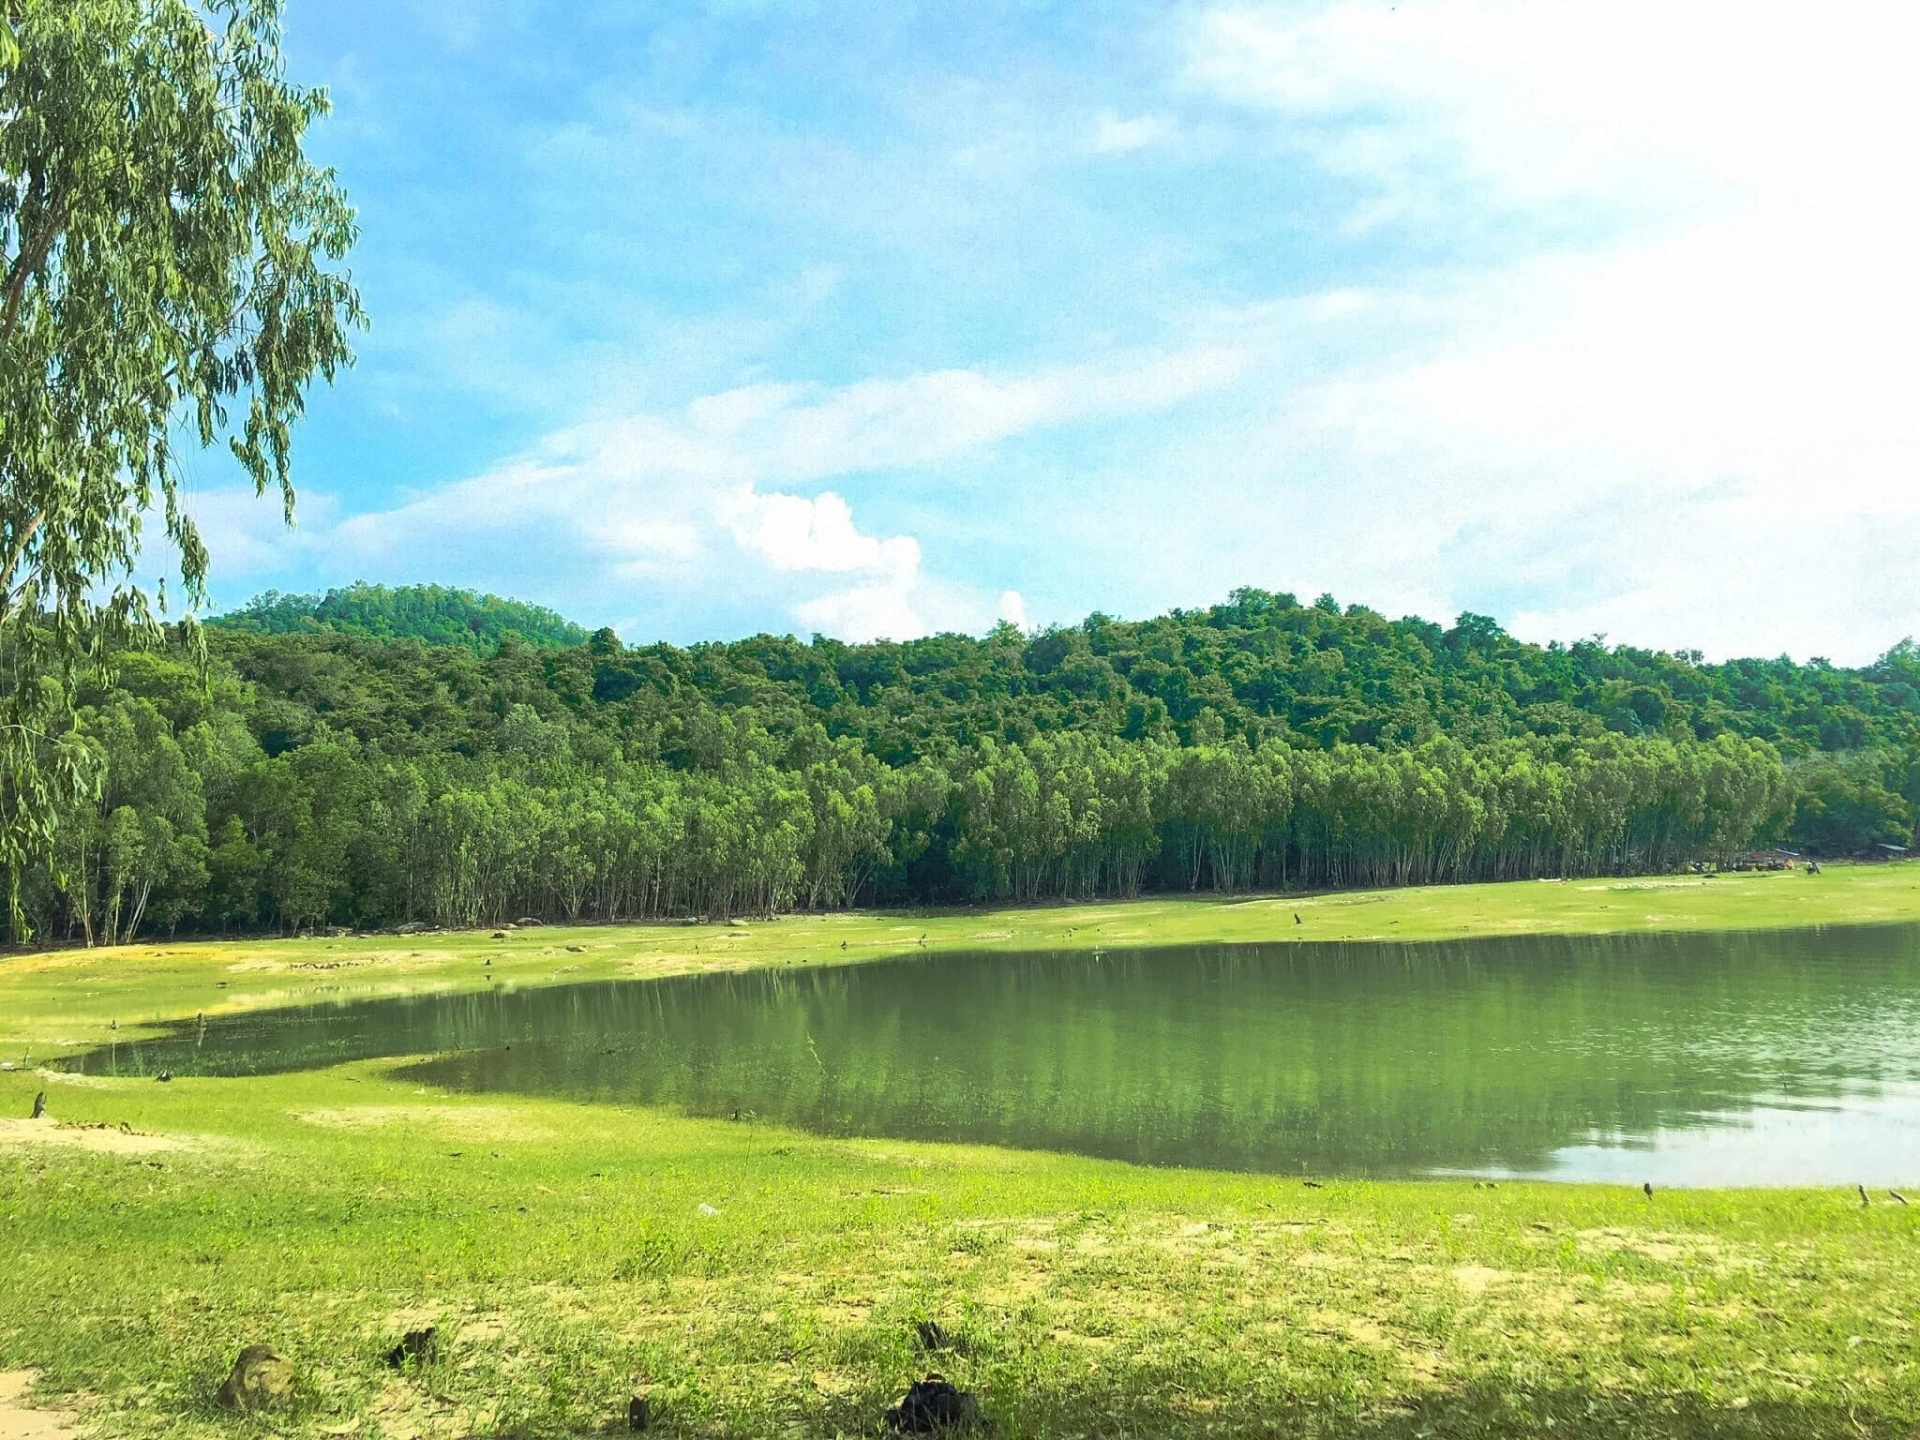 Khung cảnh thiên nhiên tuyệt đẹp tại hồ Dầu Tiếng. Ảnh: Quỳnh Như.